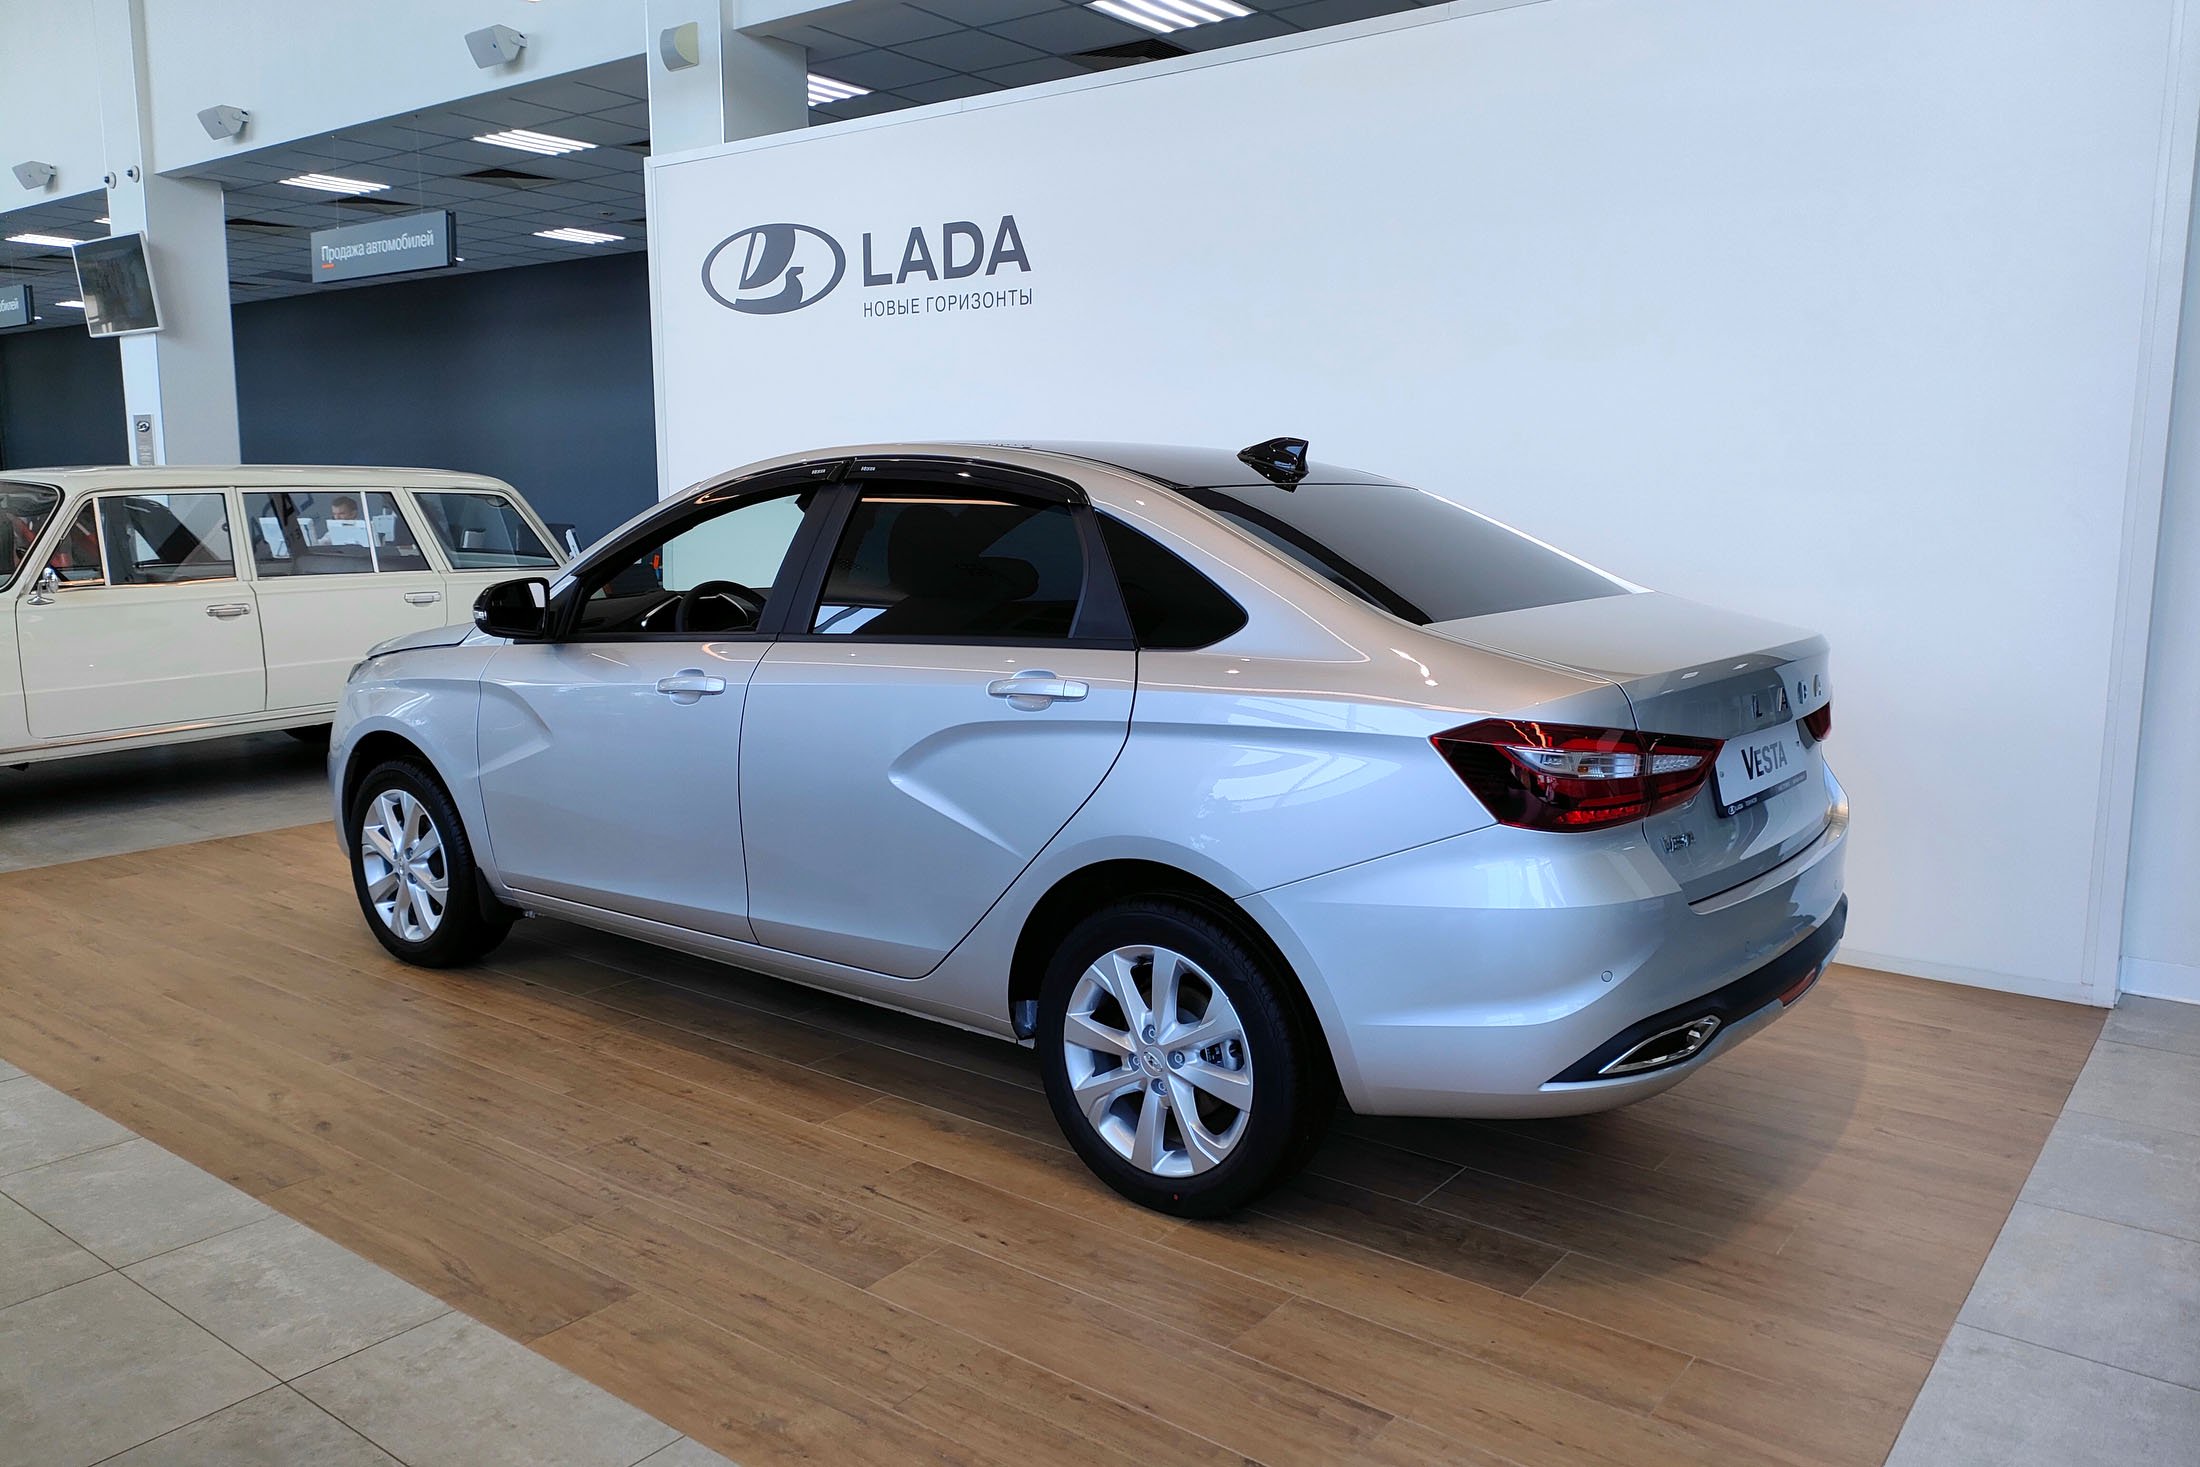 Дилер выставил на продажу новую Lada Vesta. Цена — 1 680 000 рублей